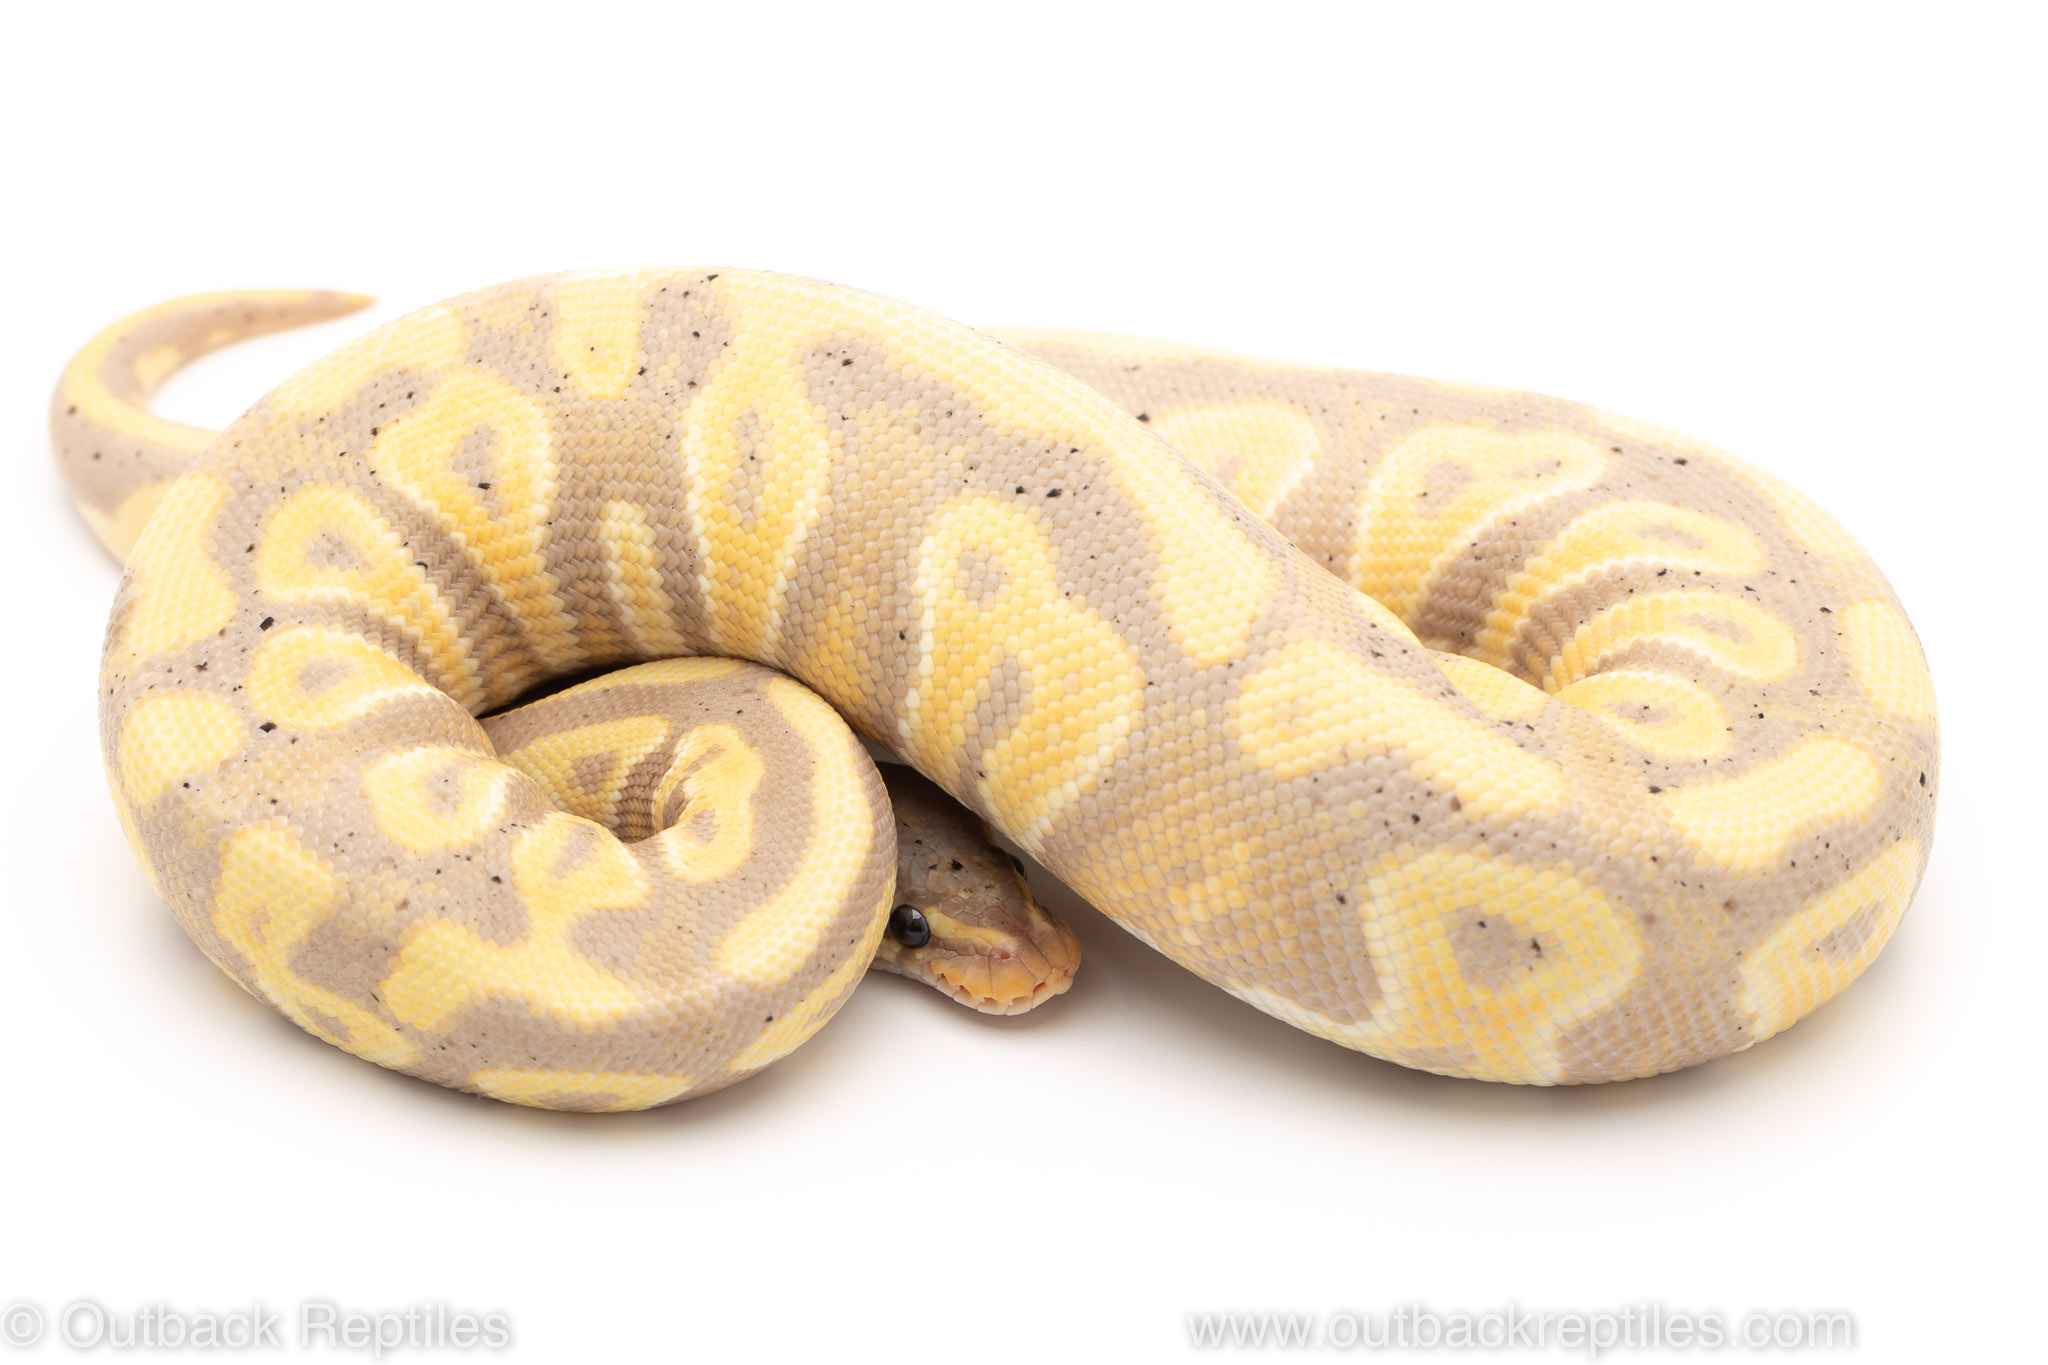 Banana phantom yellowbelly ball python for sale